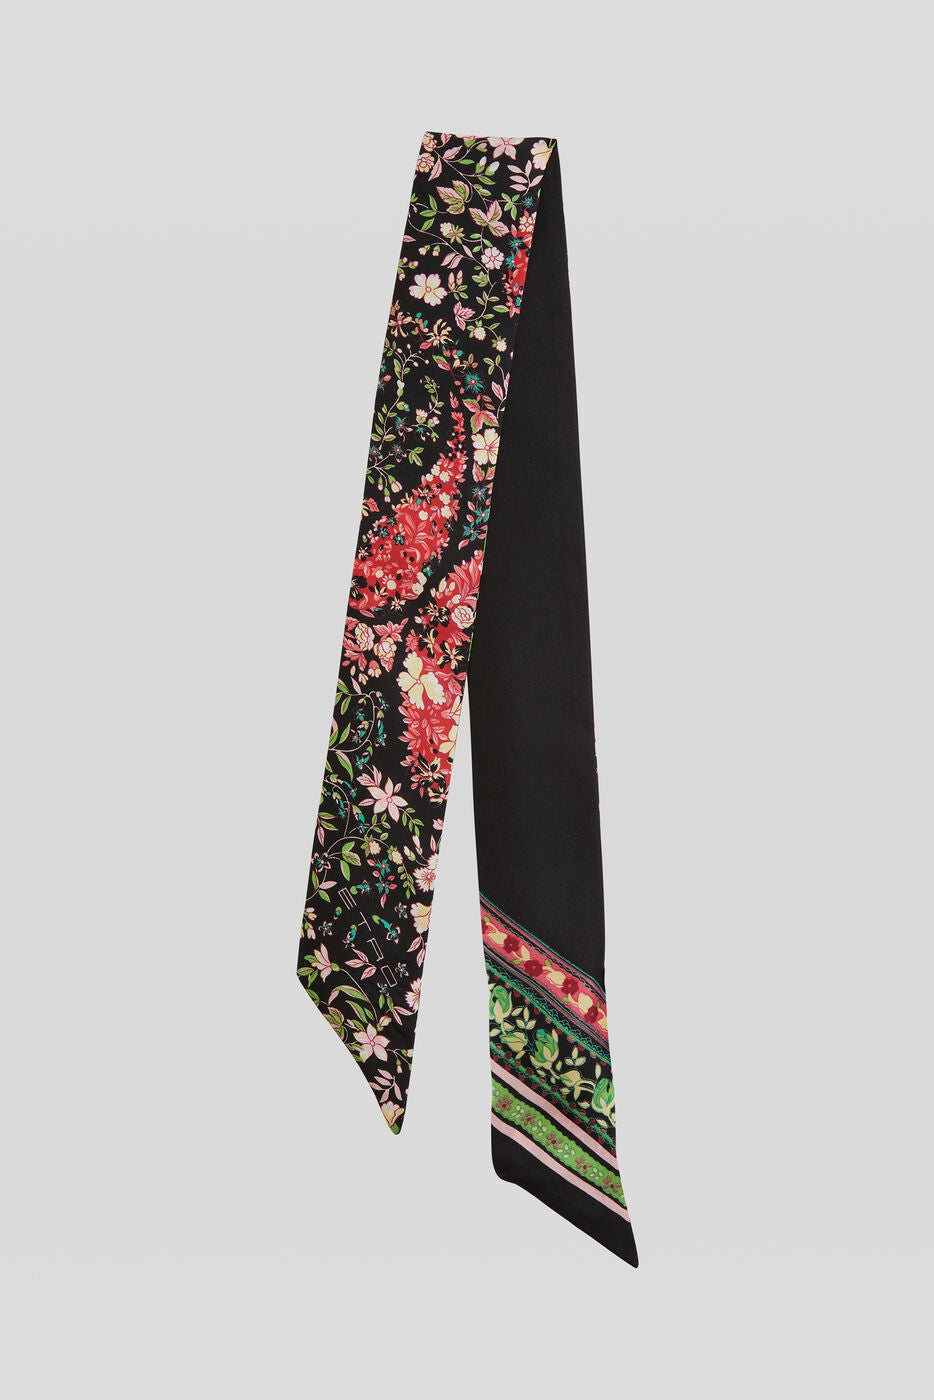 Flower Tie / Scarf